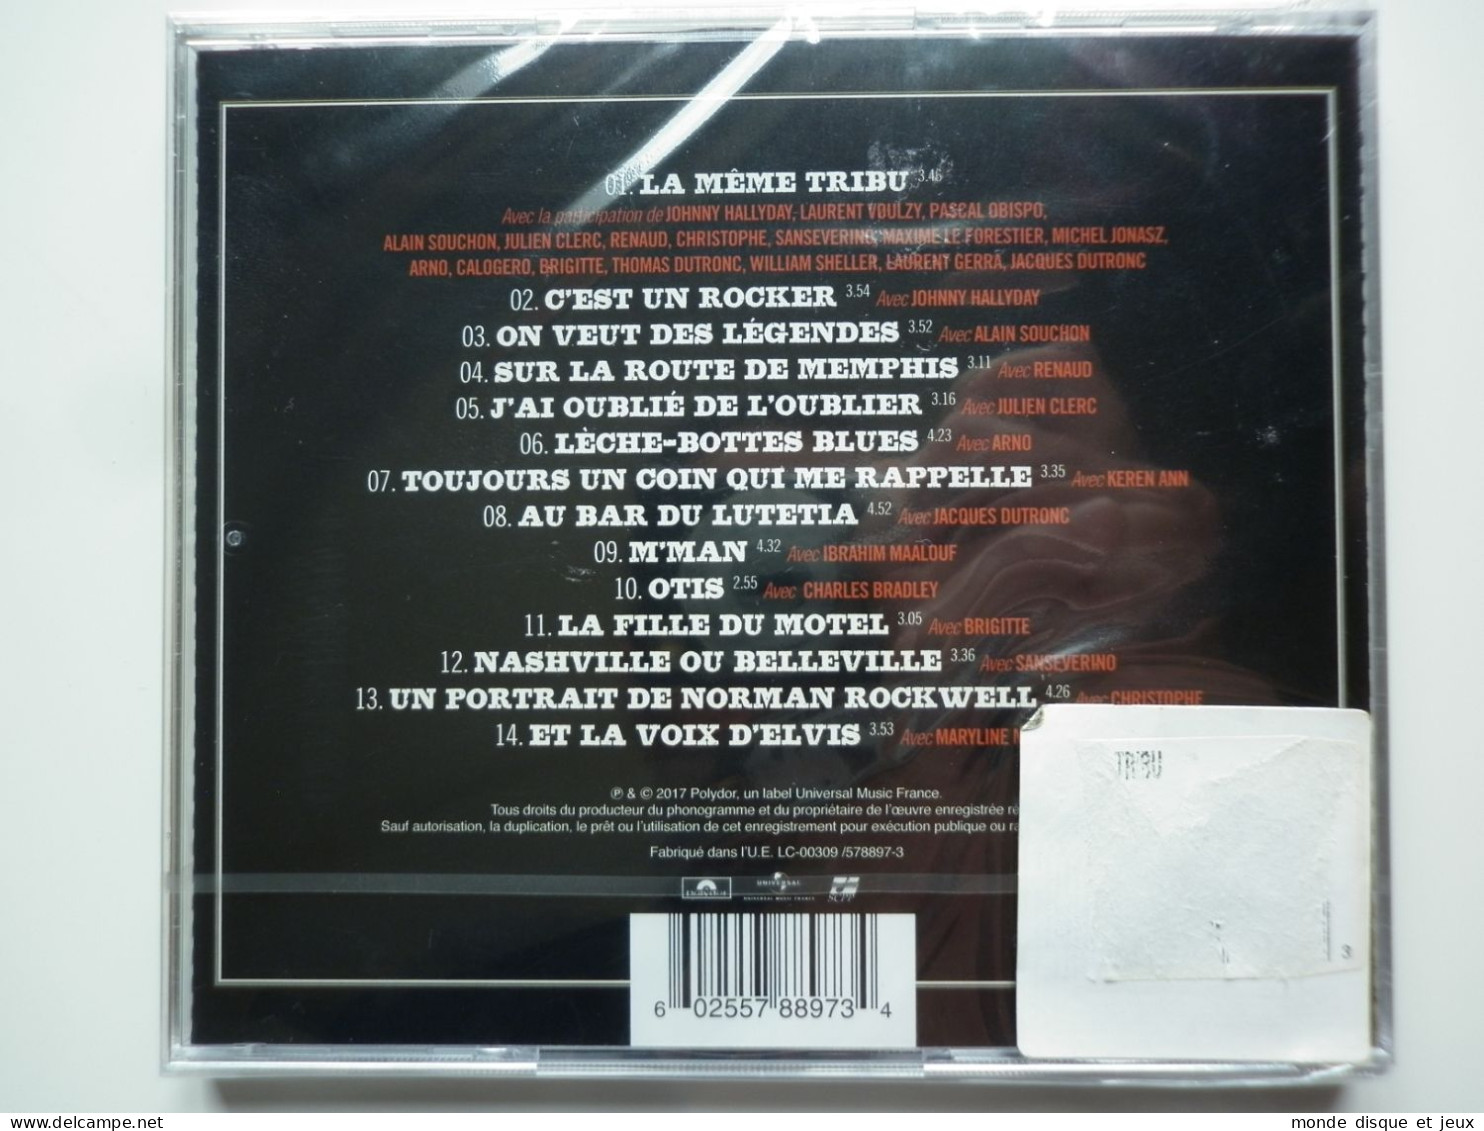 Eddy Mitchell Cd Album La Même Tribu Avec Johnny Hallyday / Renaud / Dutronc - Autres - Musique Française